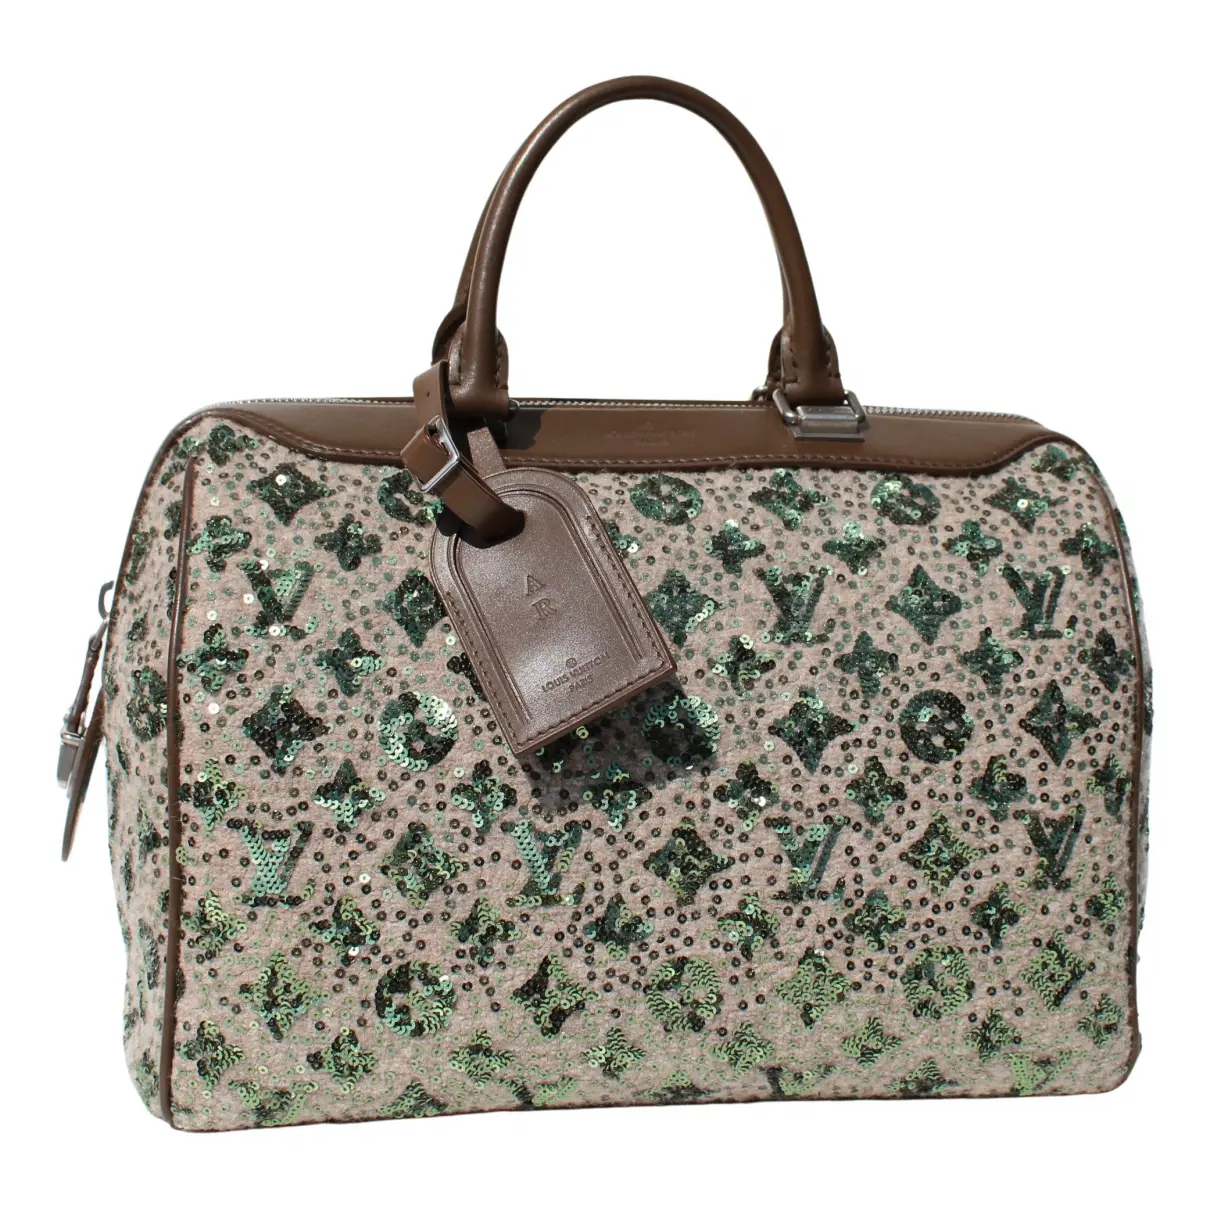 Sunshine Express glitter handbag Louis Vuitton